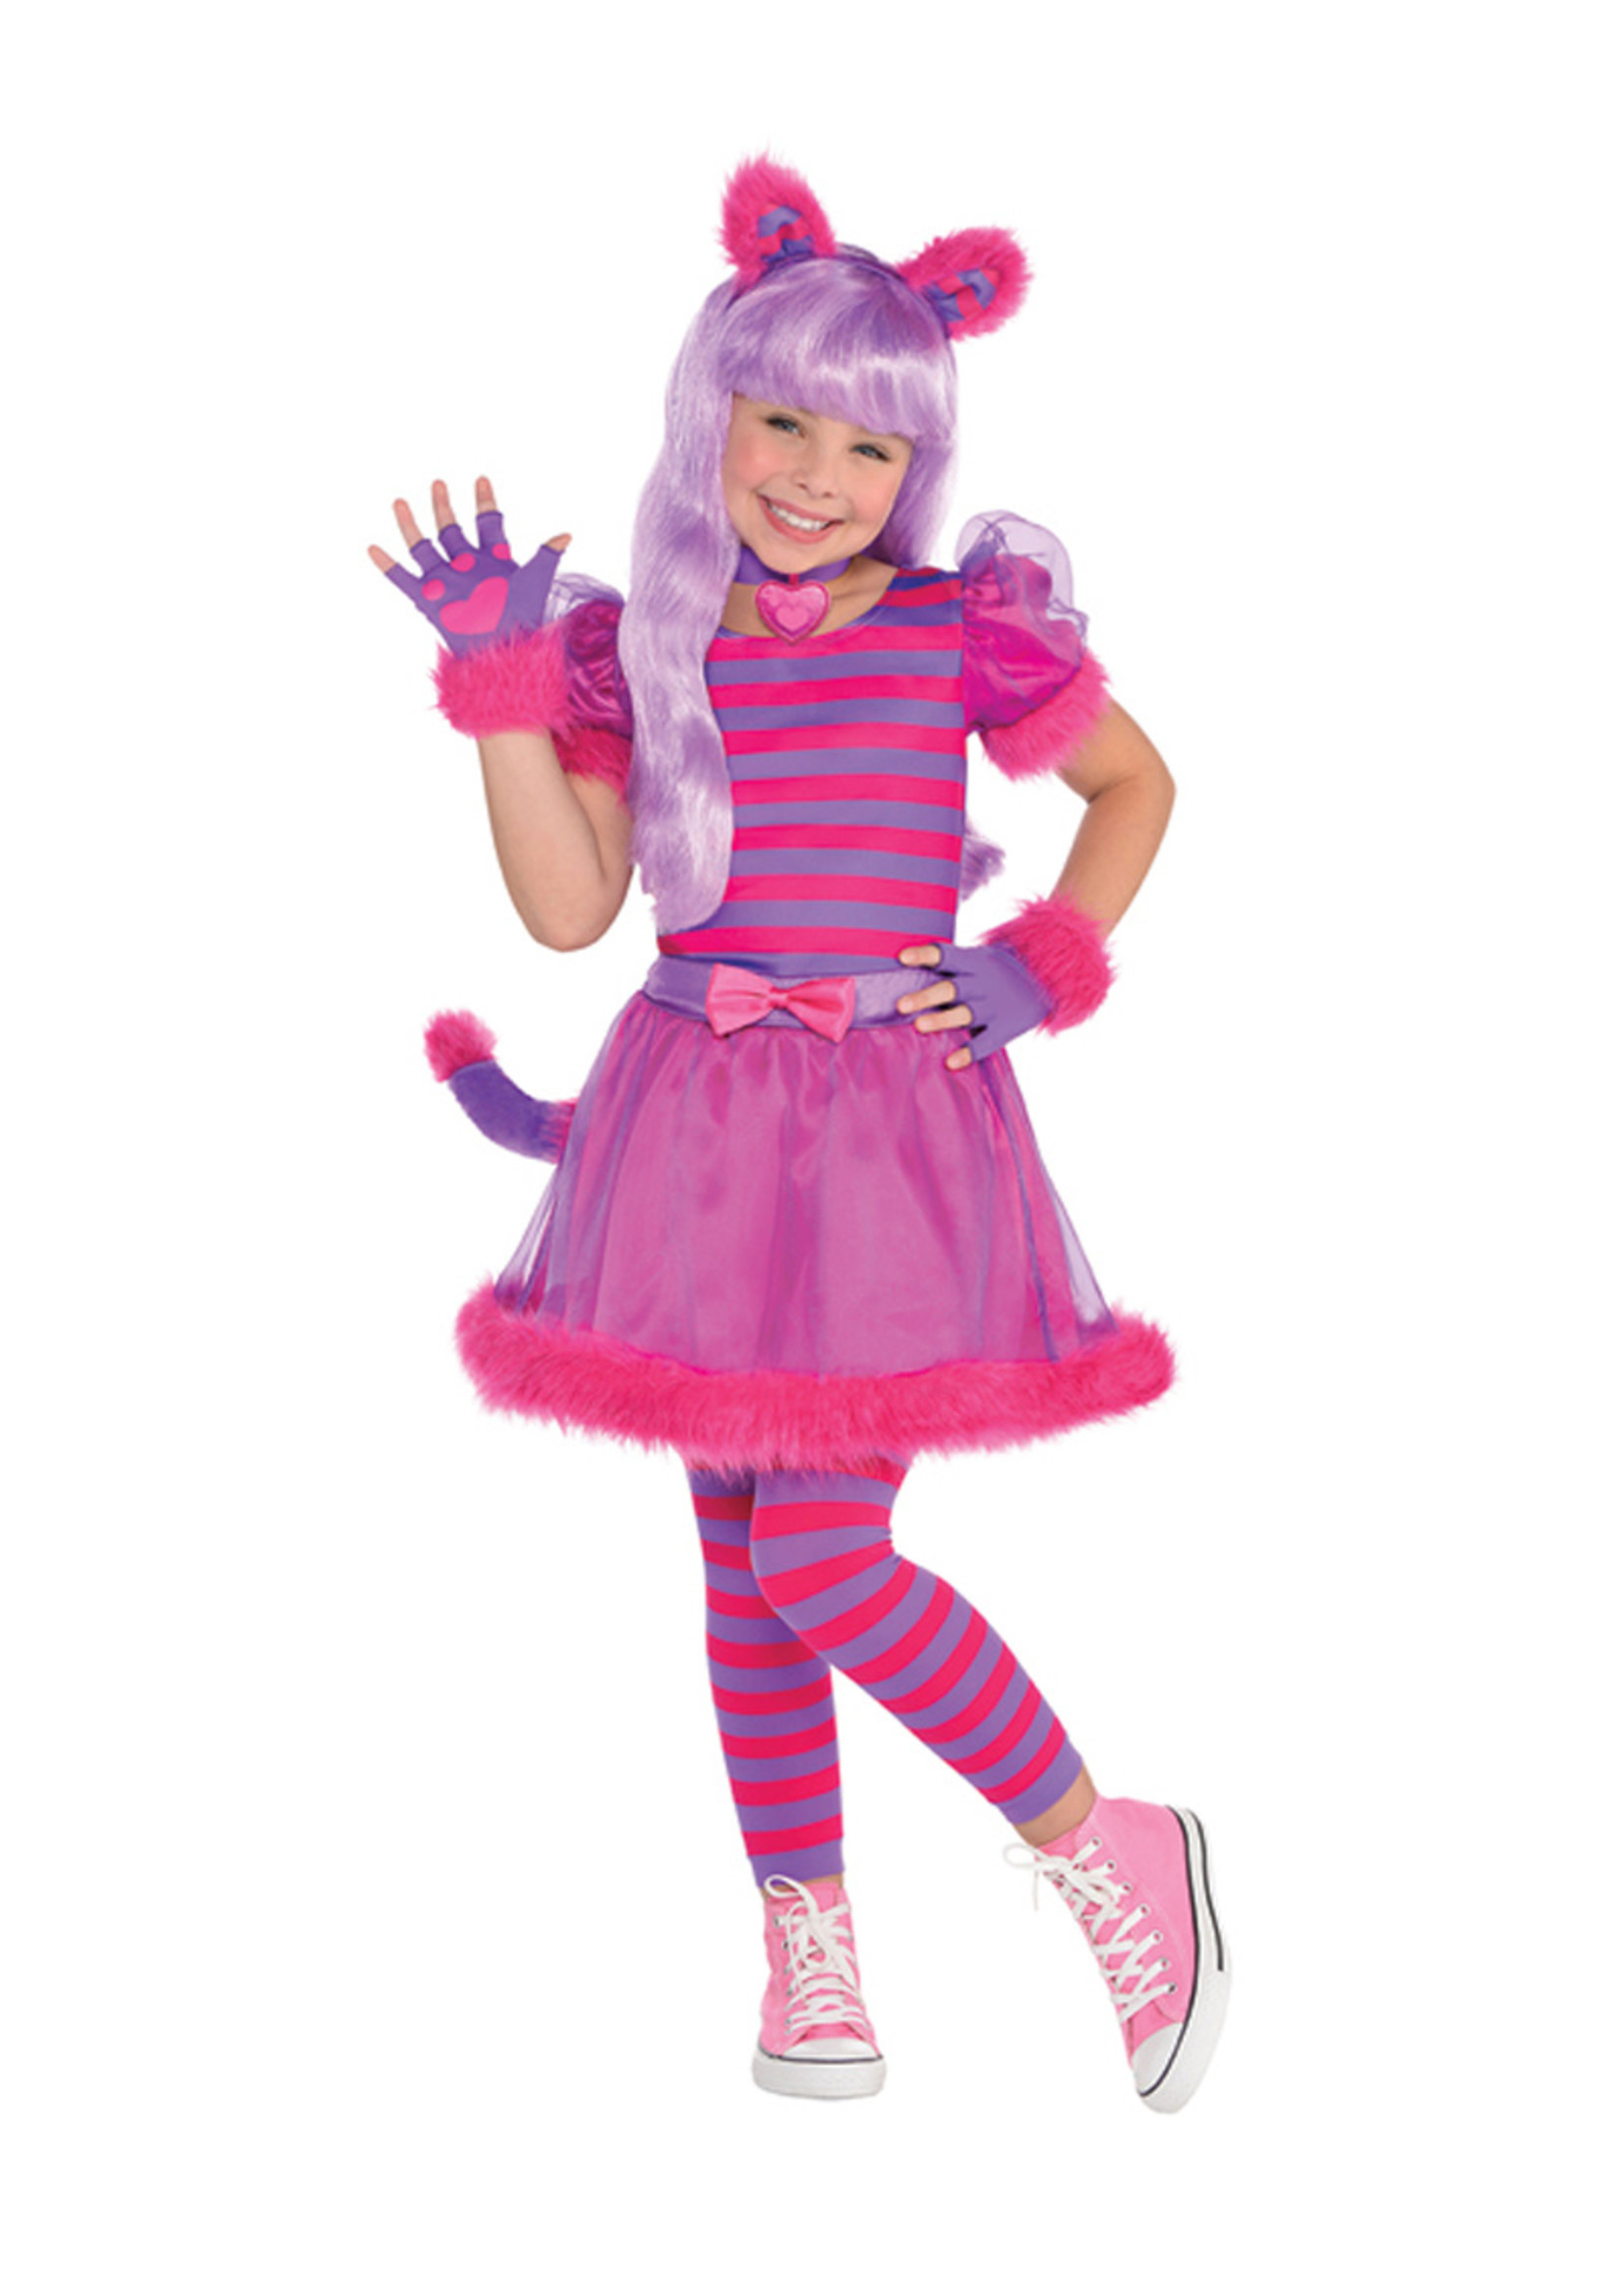 Cheshire Cat Costume - Girls